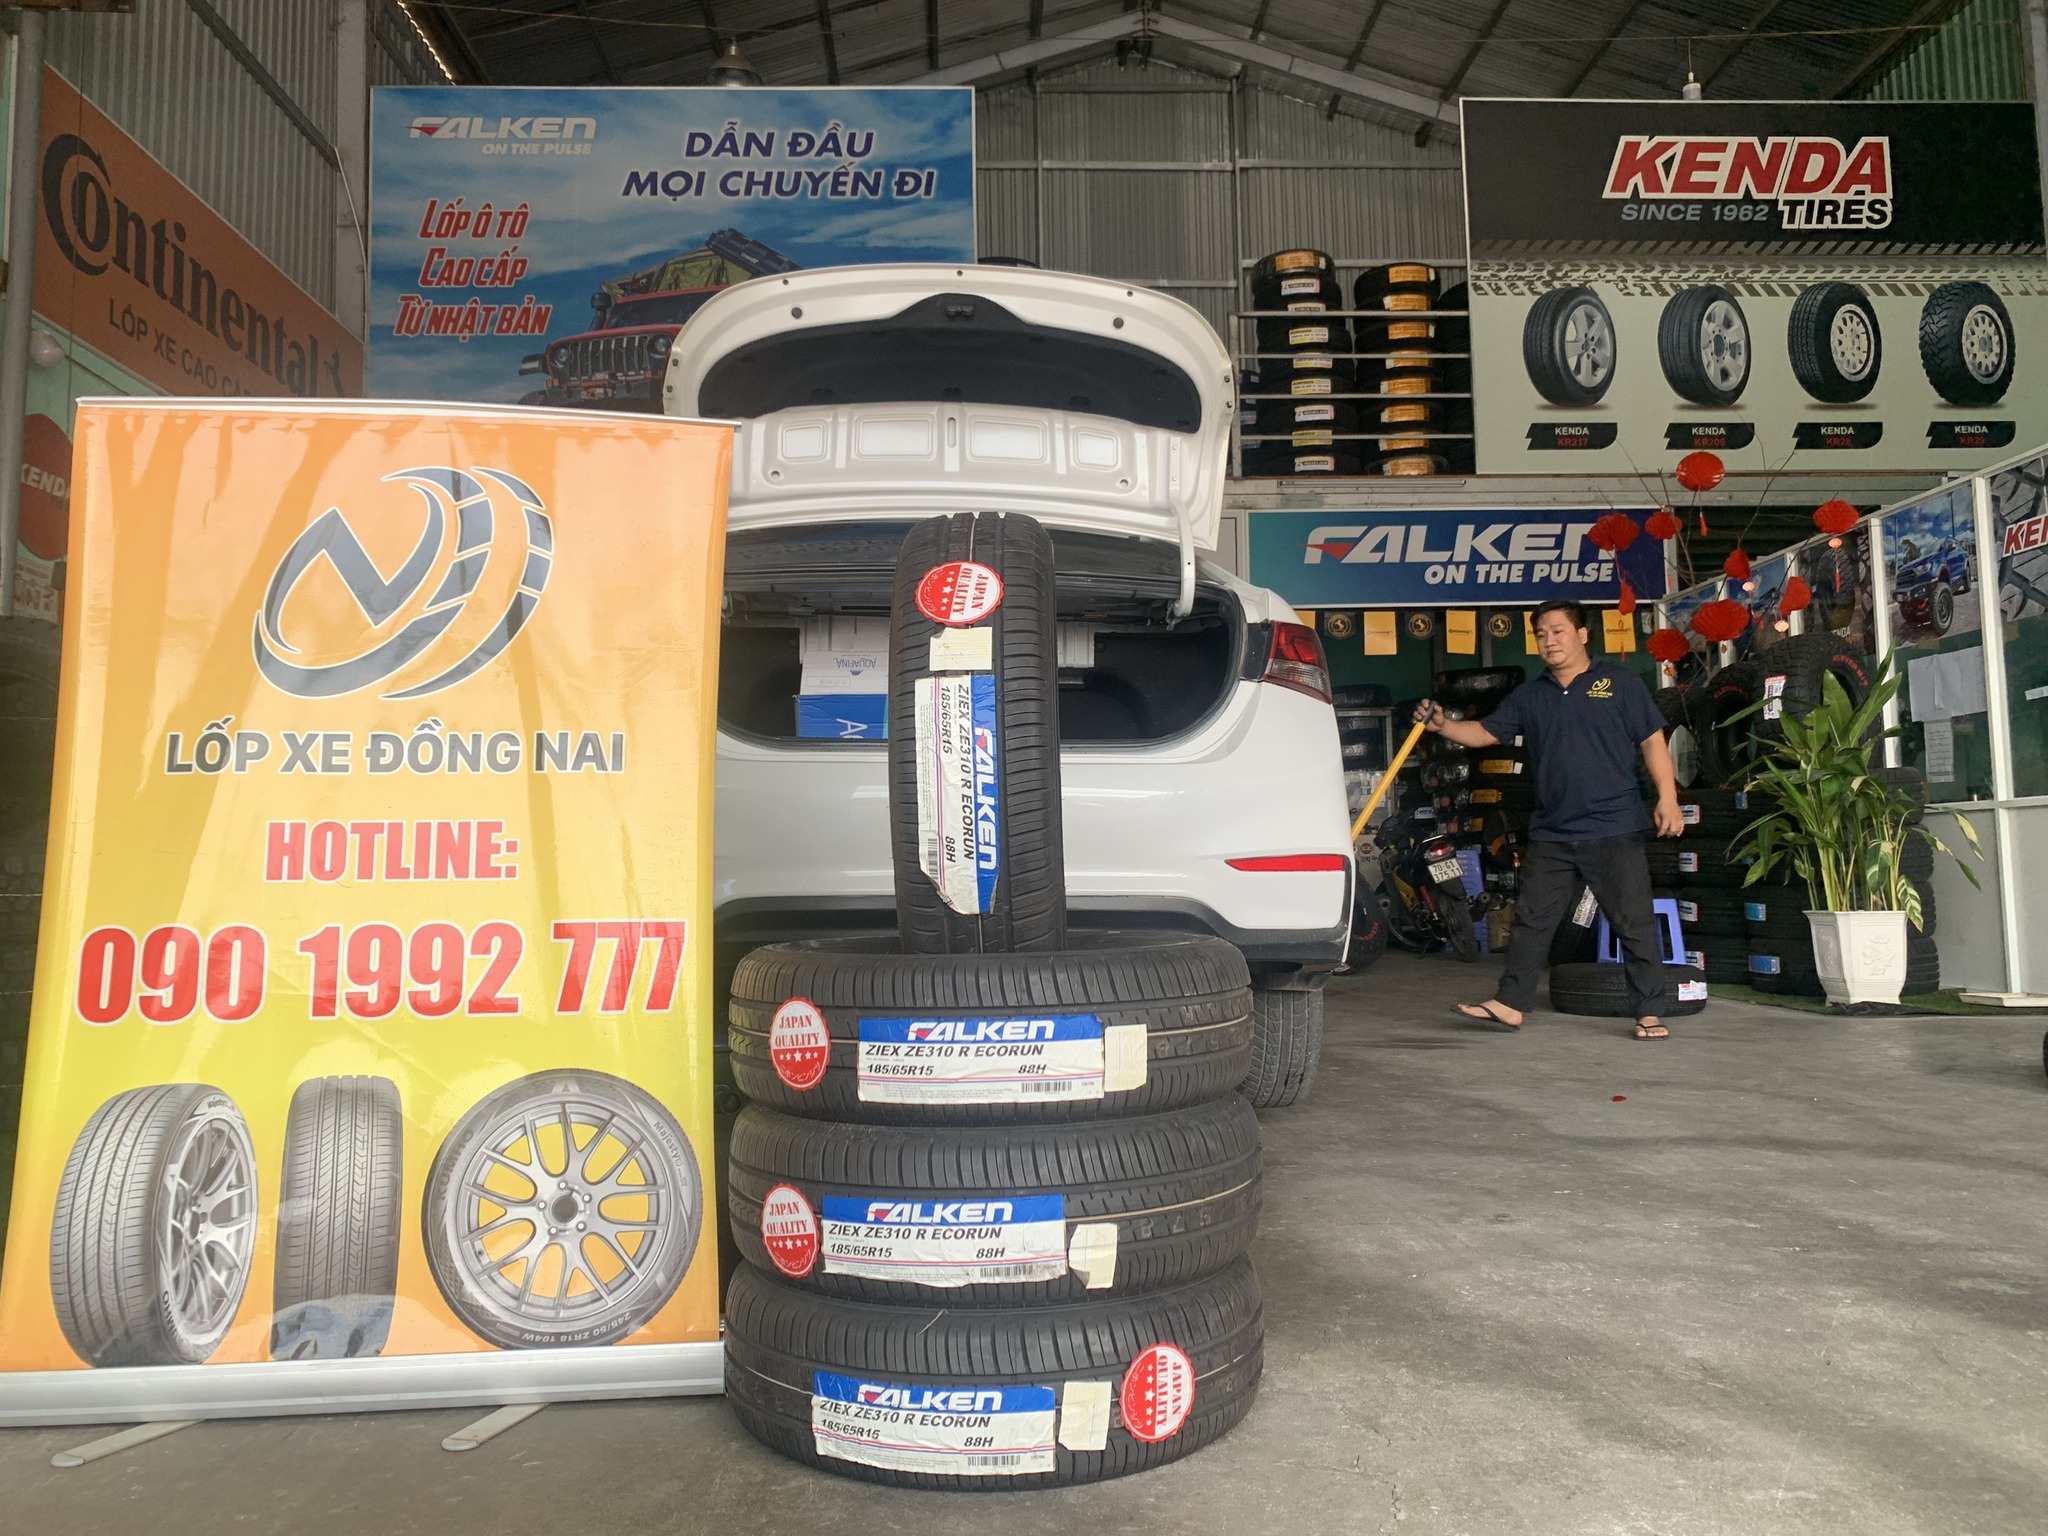 TƯ VẤN : Thay lốp xe Suzuki Ertiga ở Nhơn Trạch, Đông Nai.